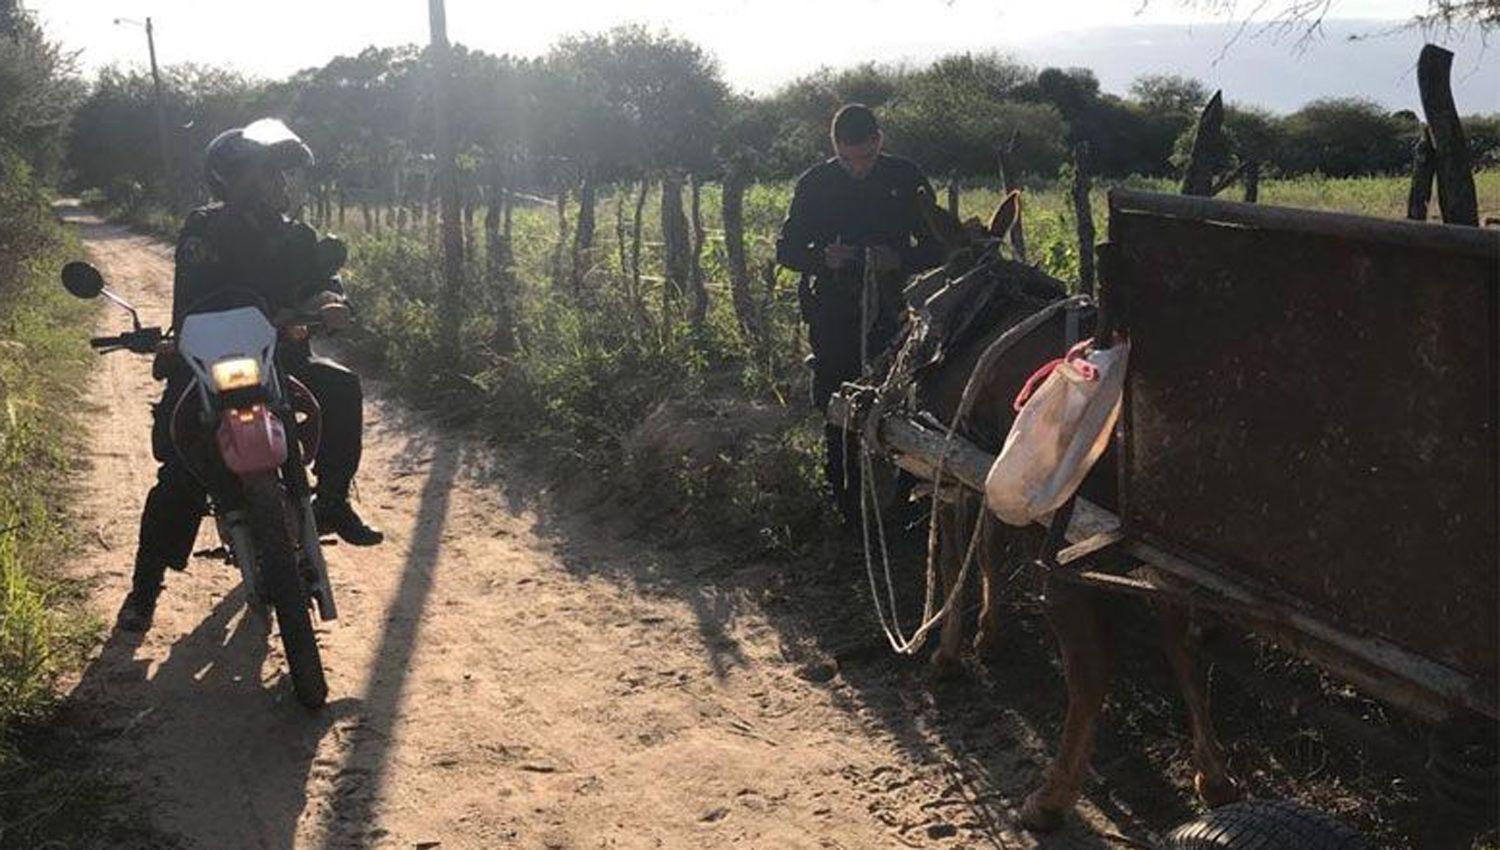 Organizaron carrera de caballos y huyeron al ver a la Policiacutea- dos menores fueron atrapados